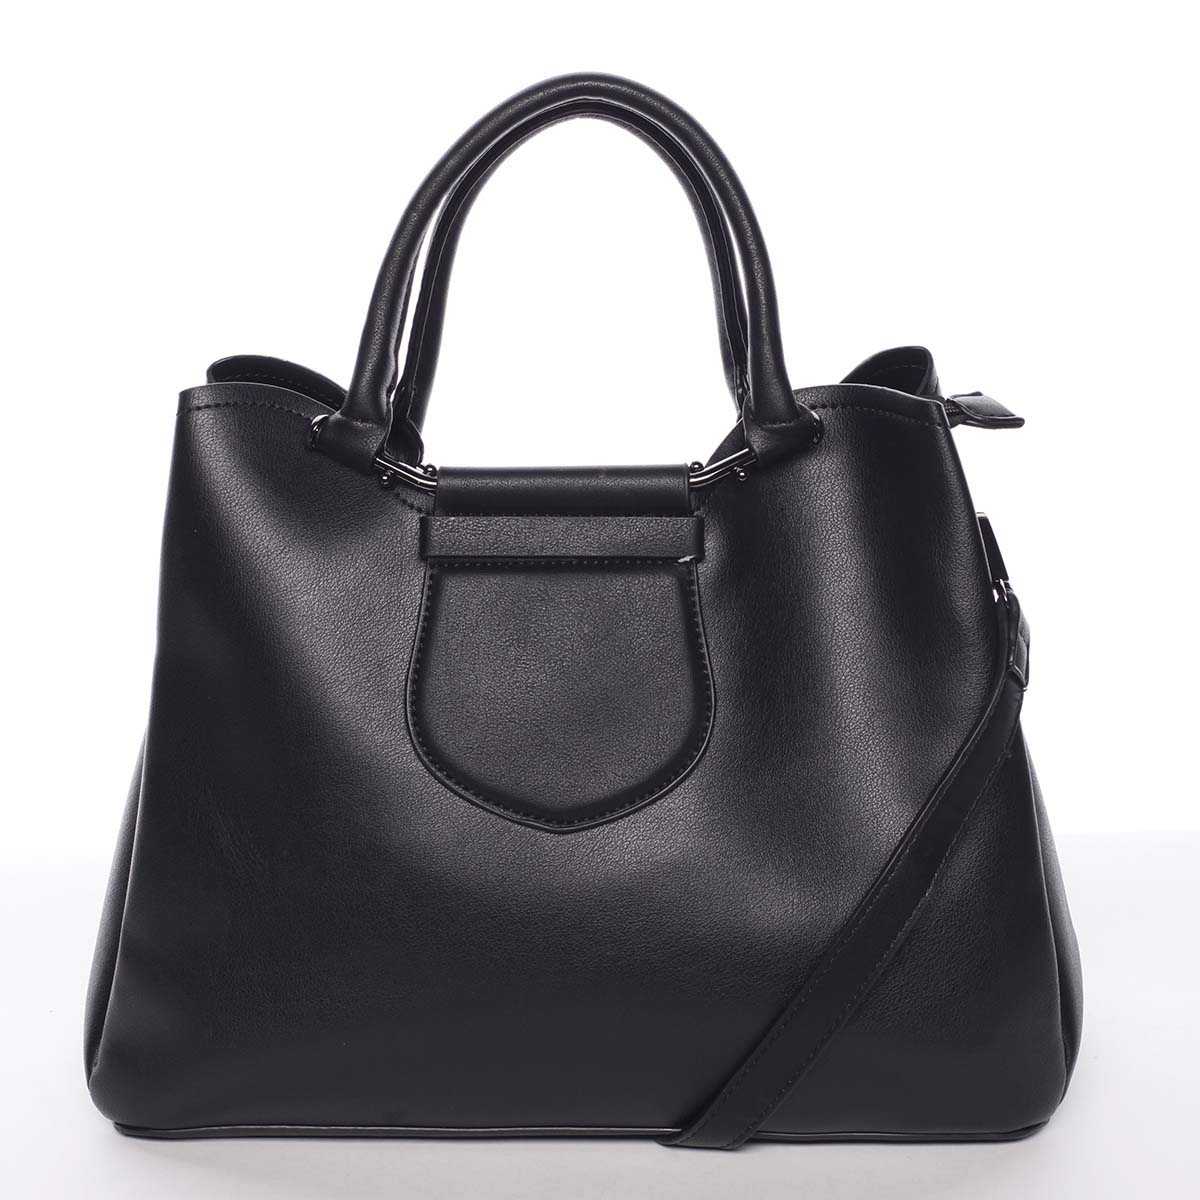 Originální a elegantní dámská černá kabelka do ruky - MARIA C Terisita